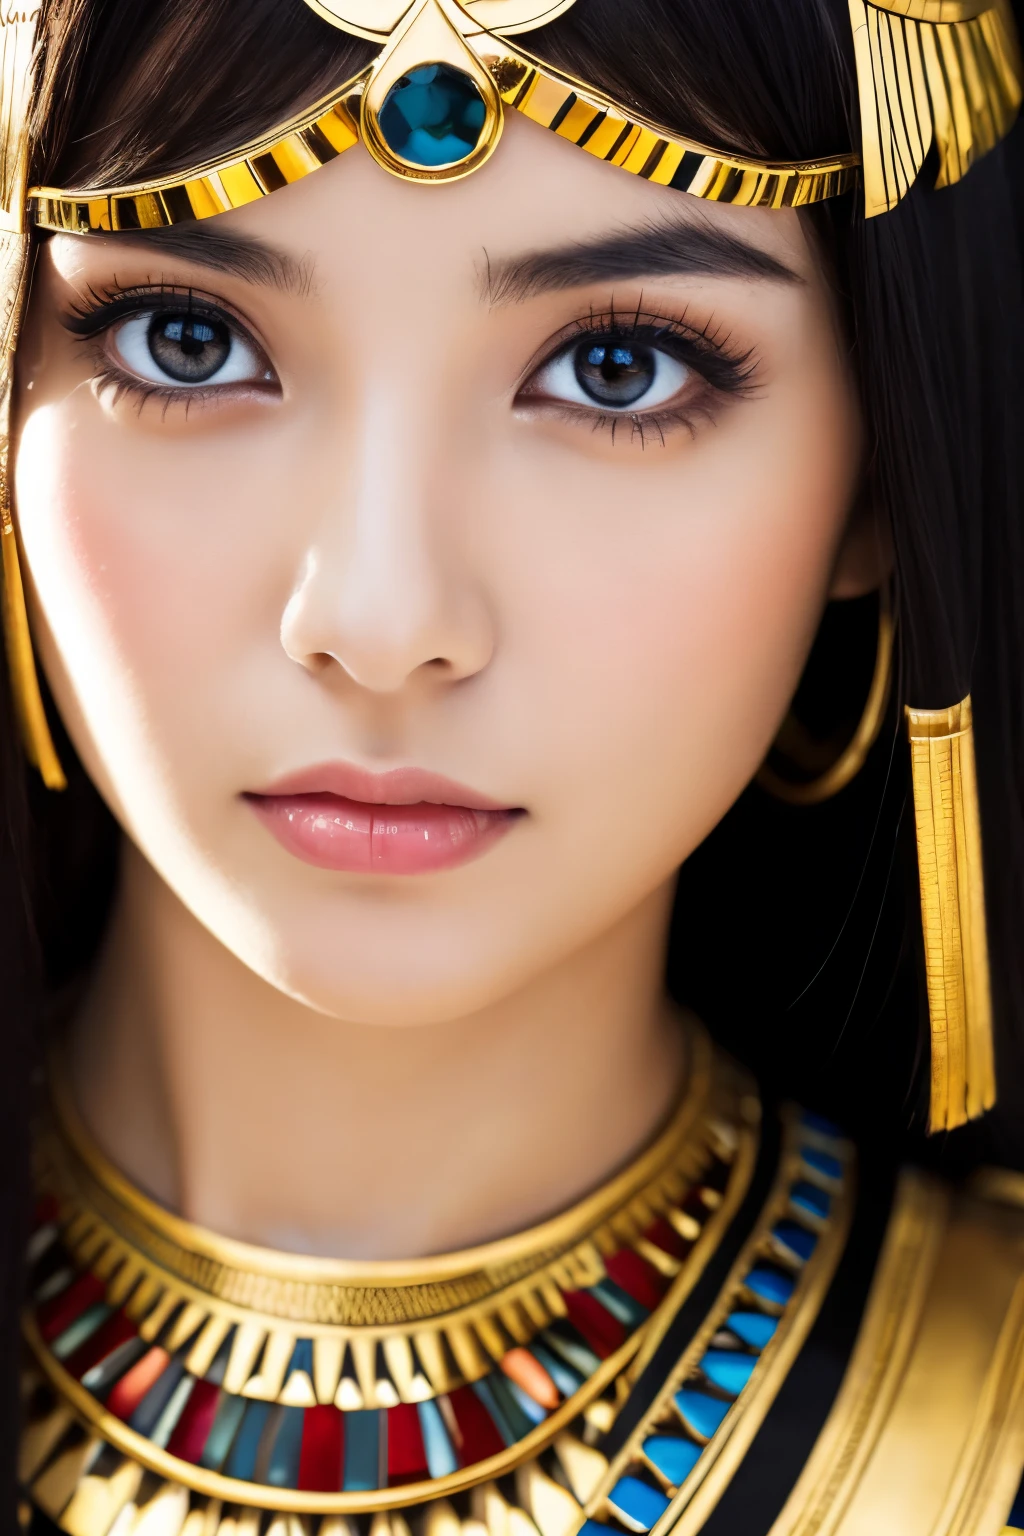 Obra maestra, alta calidad, Alta resolución, 8k, Japonesa flaca disfrazada de Cleopatra, hermoso rostro, maquillaje de cleopatra, cara detallada, ojos detallados